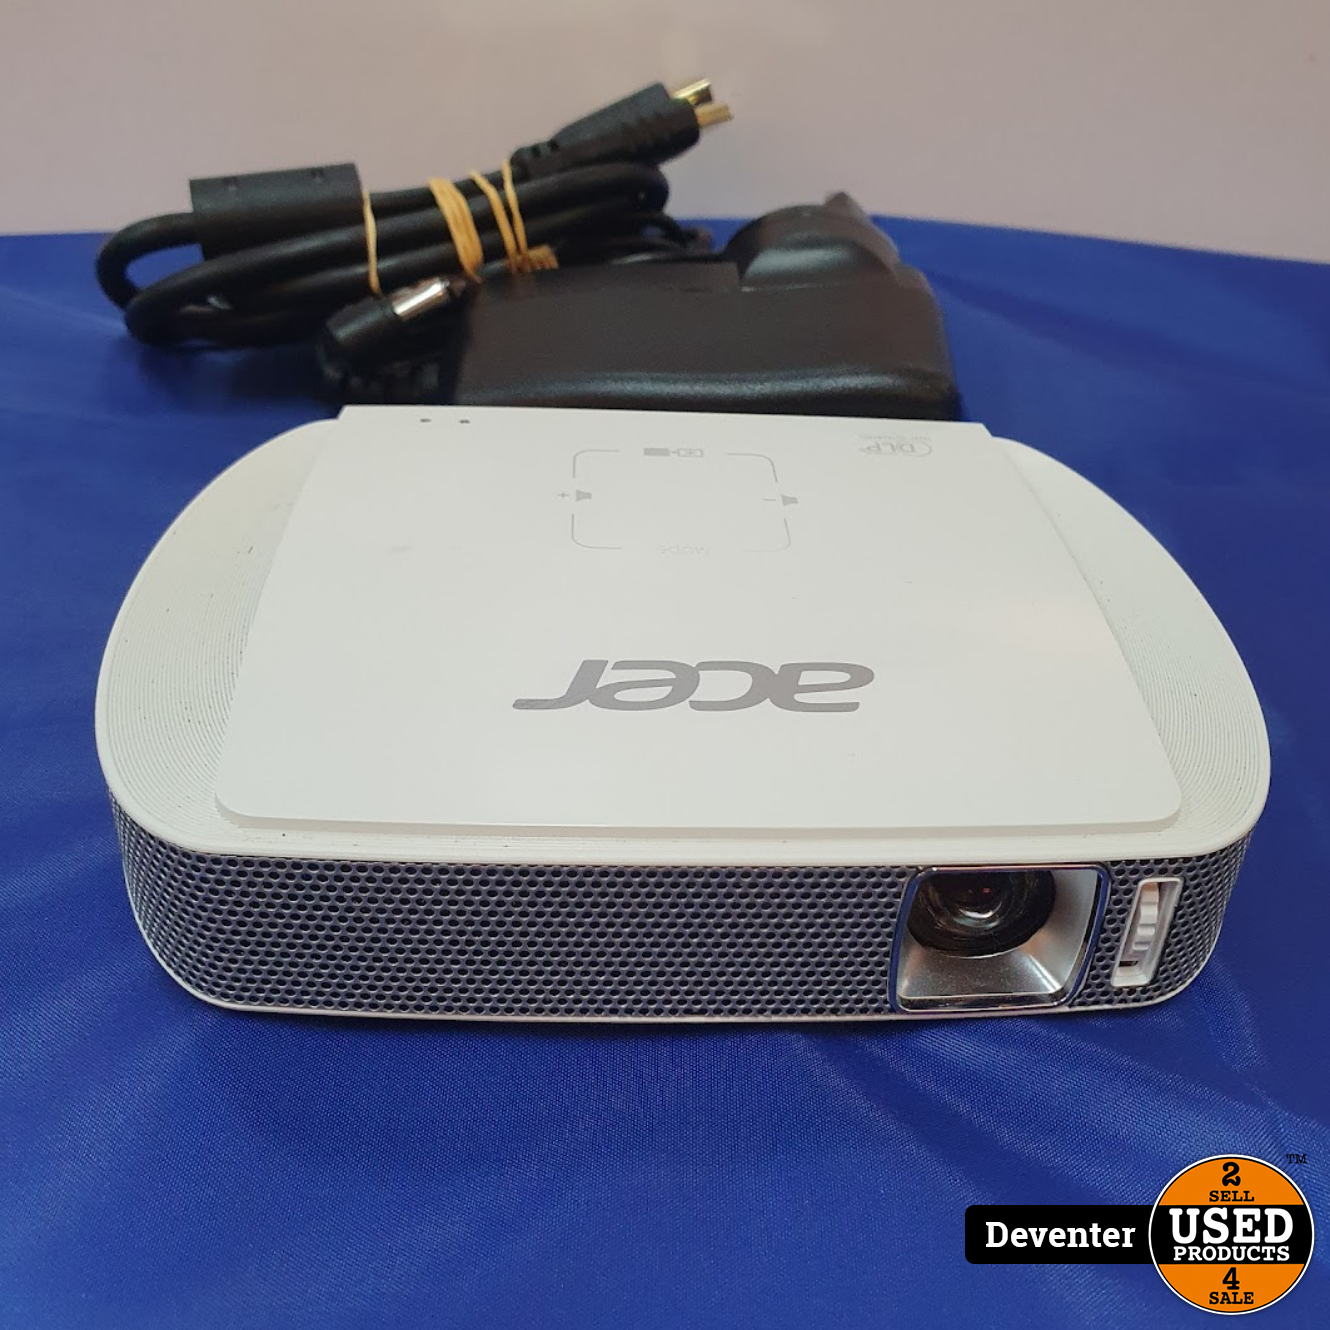 coupon vooroordeel Schaduw Acer C205 mini beamer II LED II Met garantie - Used Products Deventer